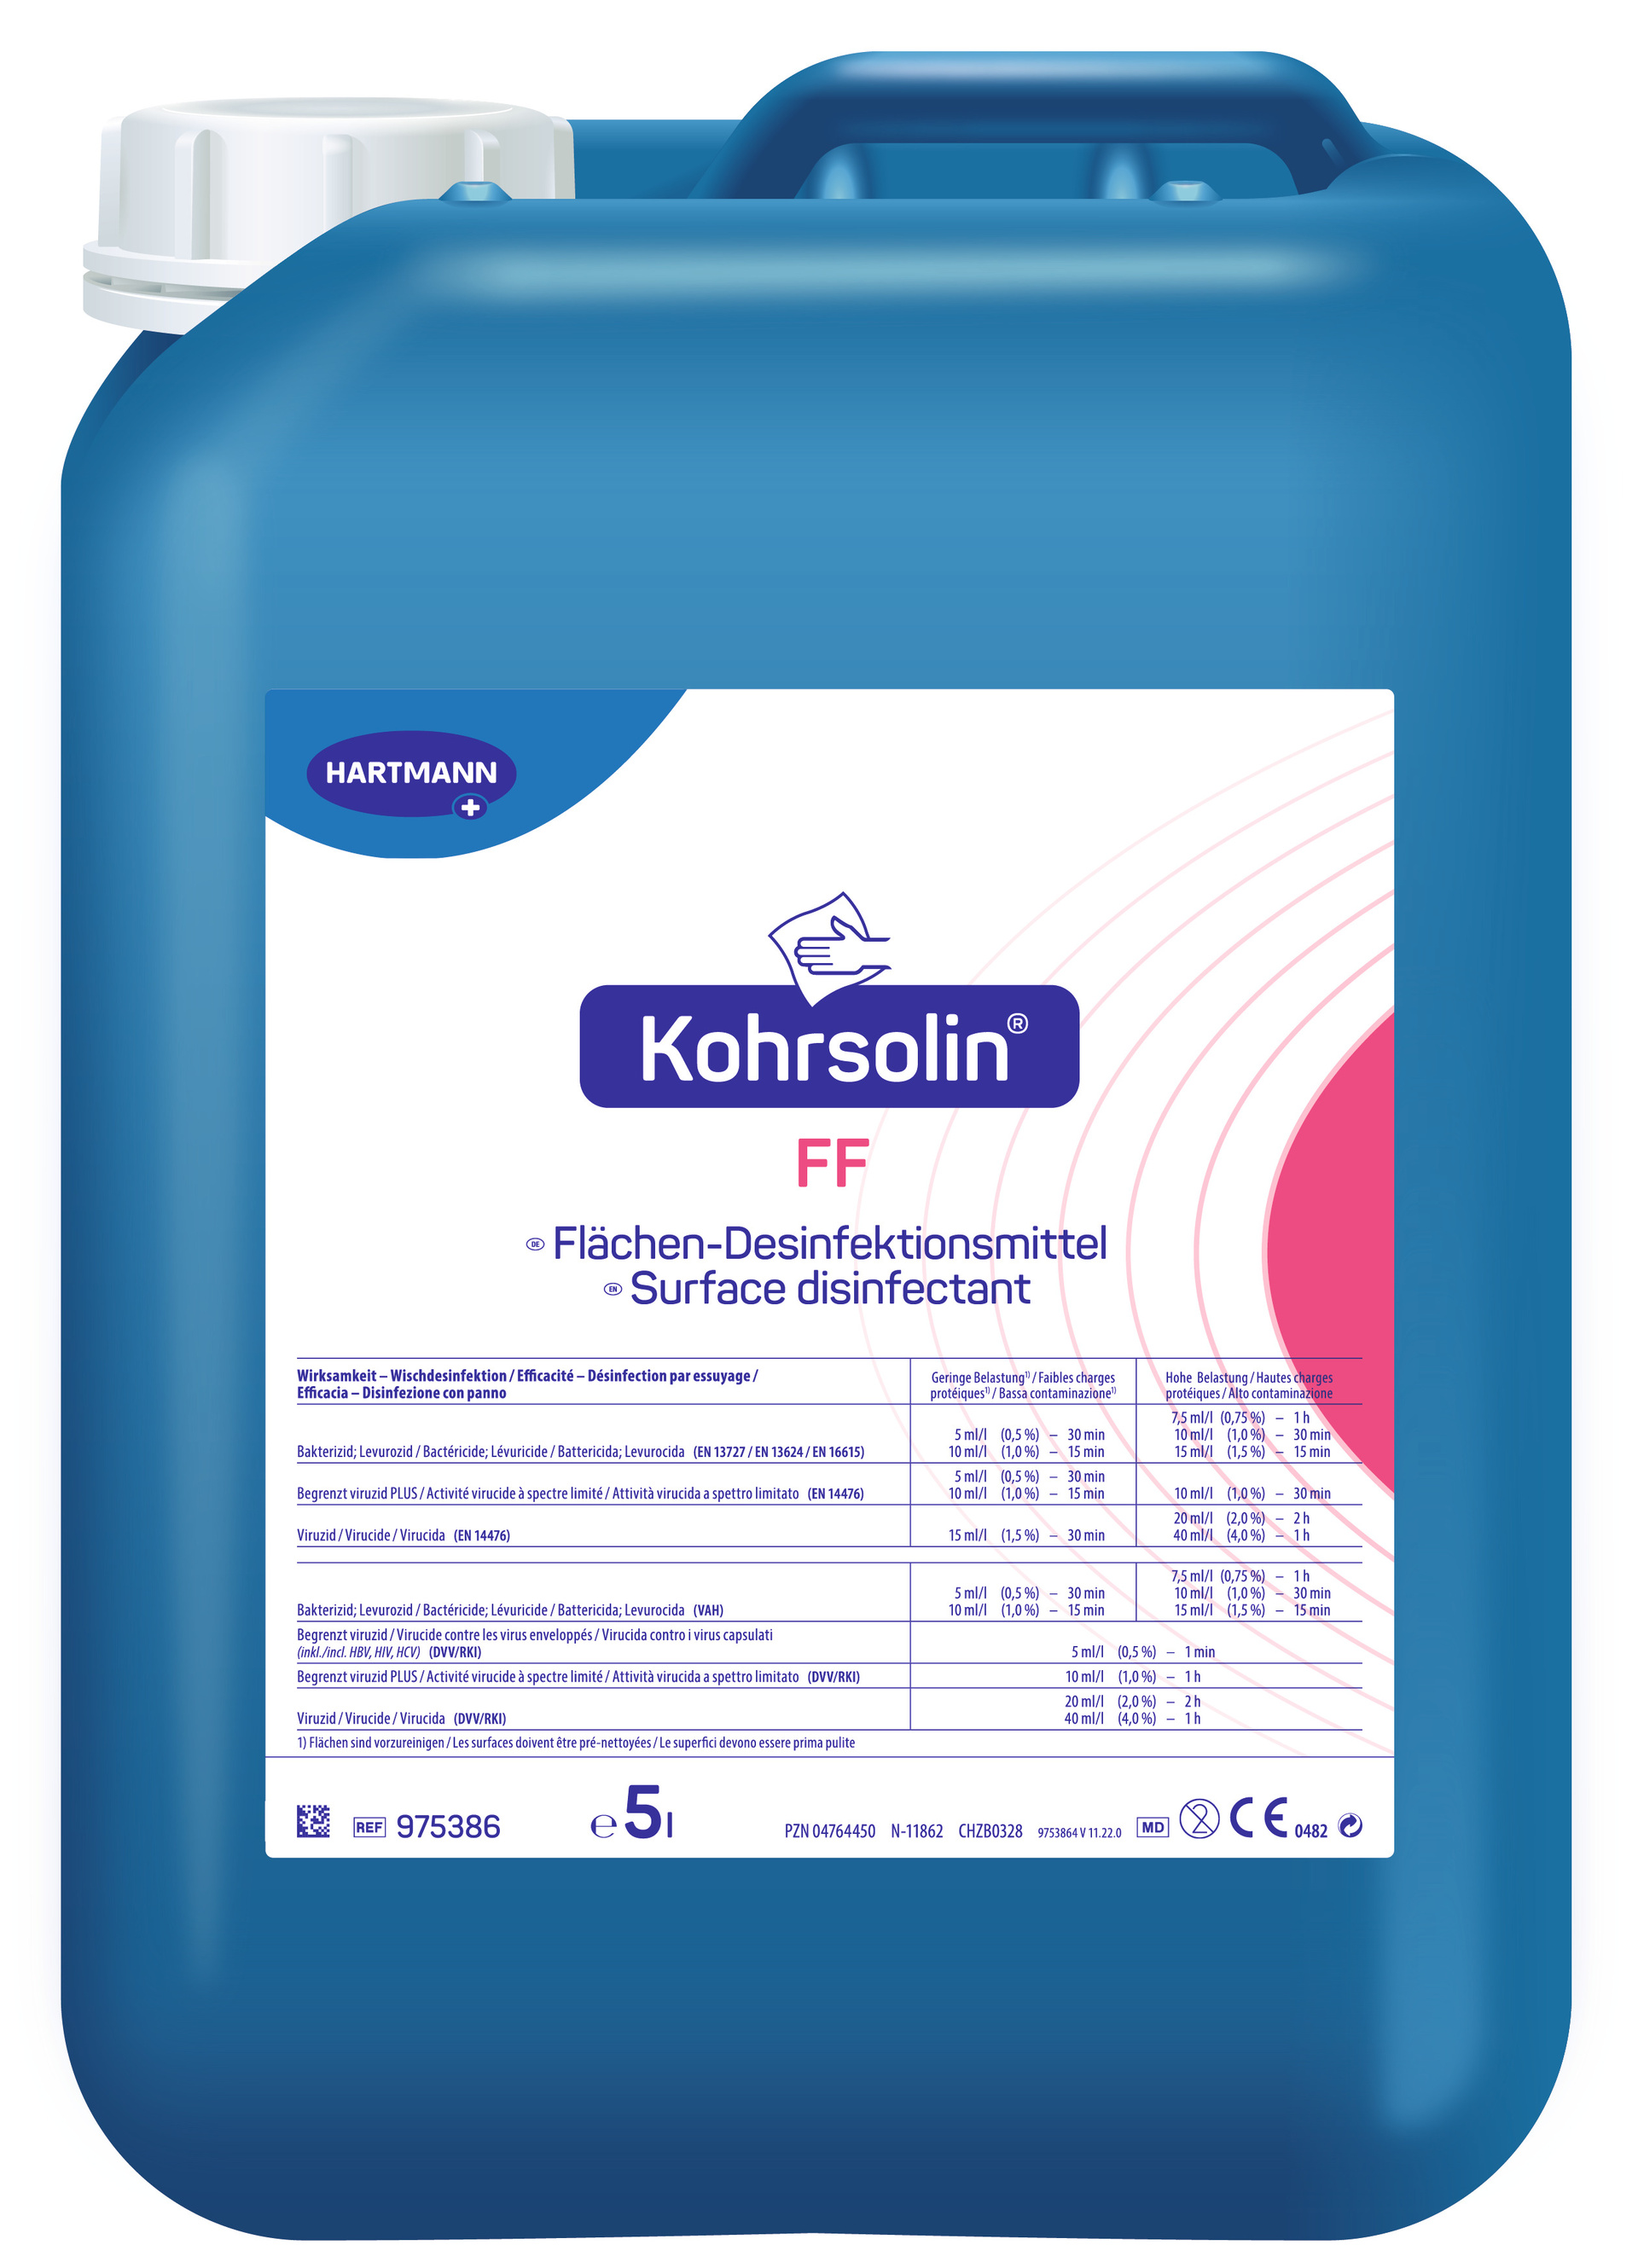 Kohrsolin FF Flächen-Desinfektionsreiniger, aldehydfrei, 5L, 1 Stck.